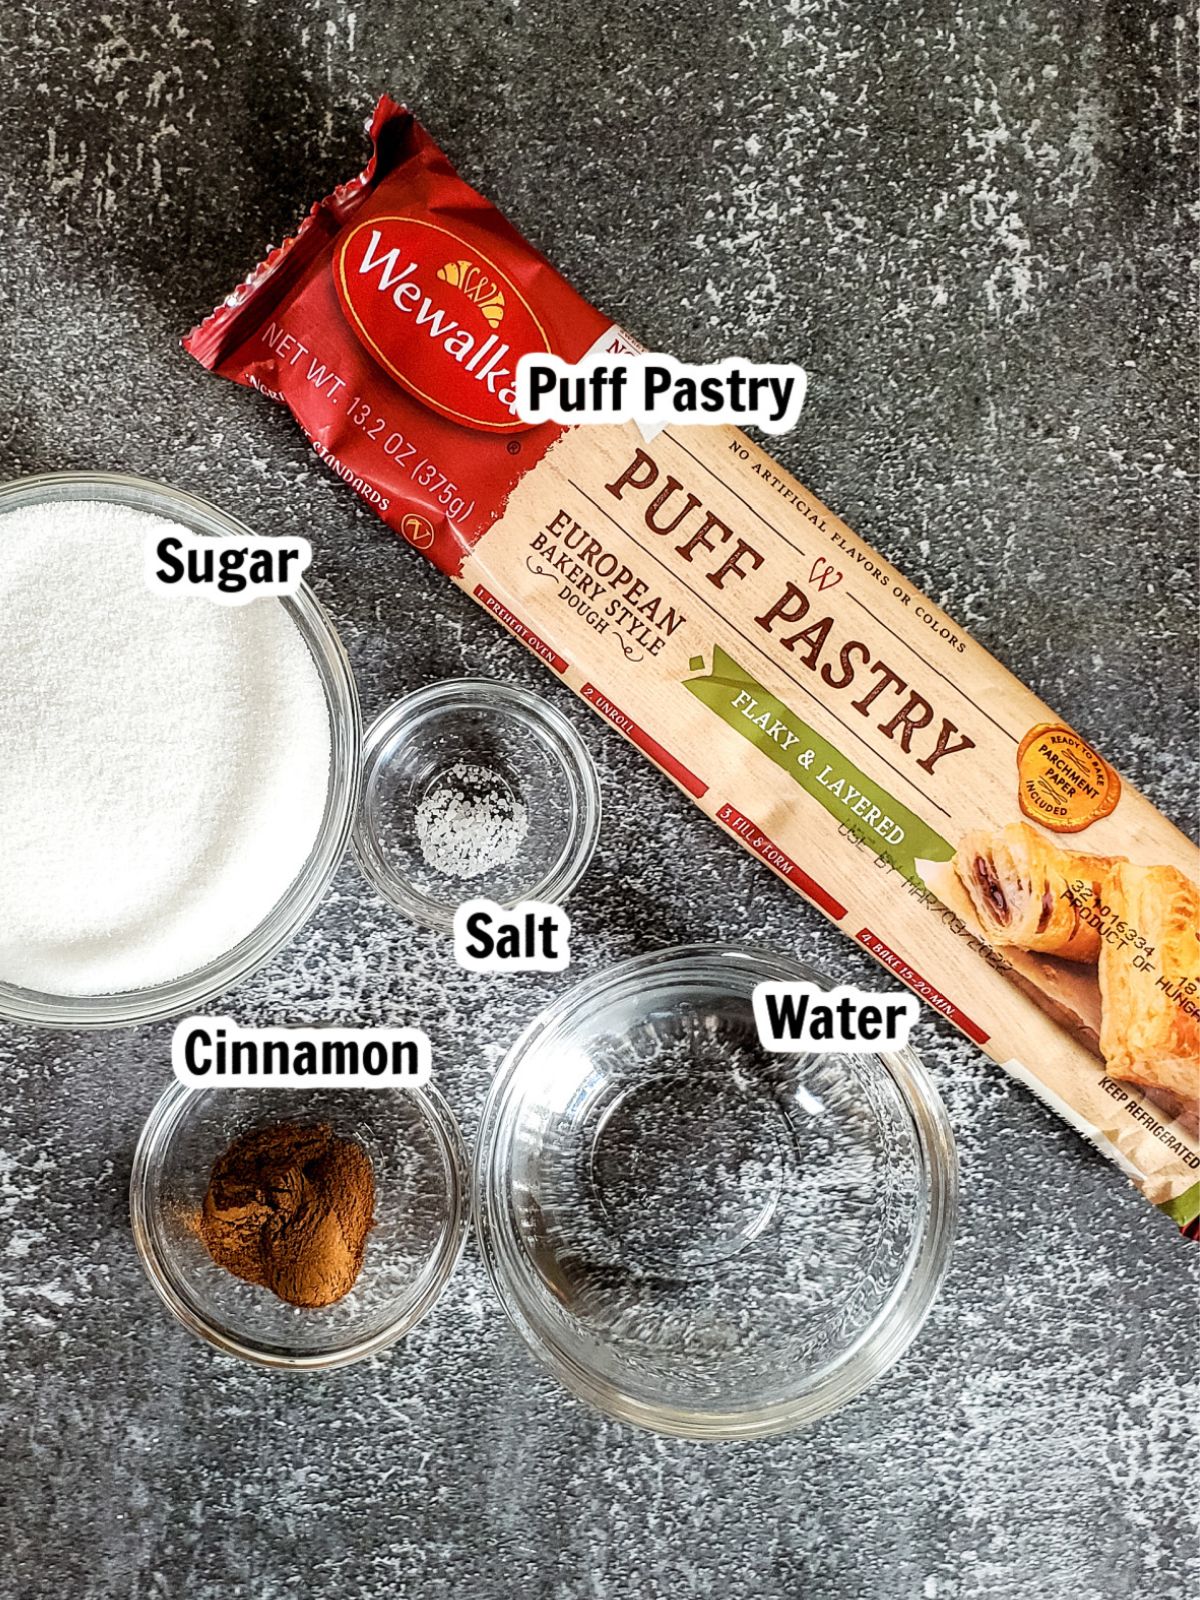 ingredients - puff pastry, cinnamon, granulated sugar, water.